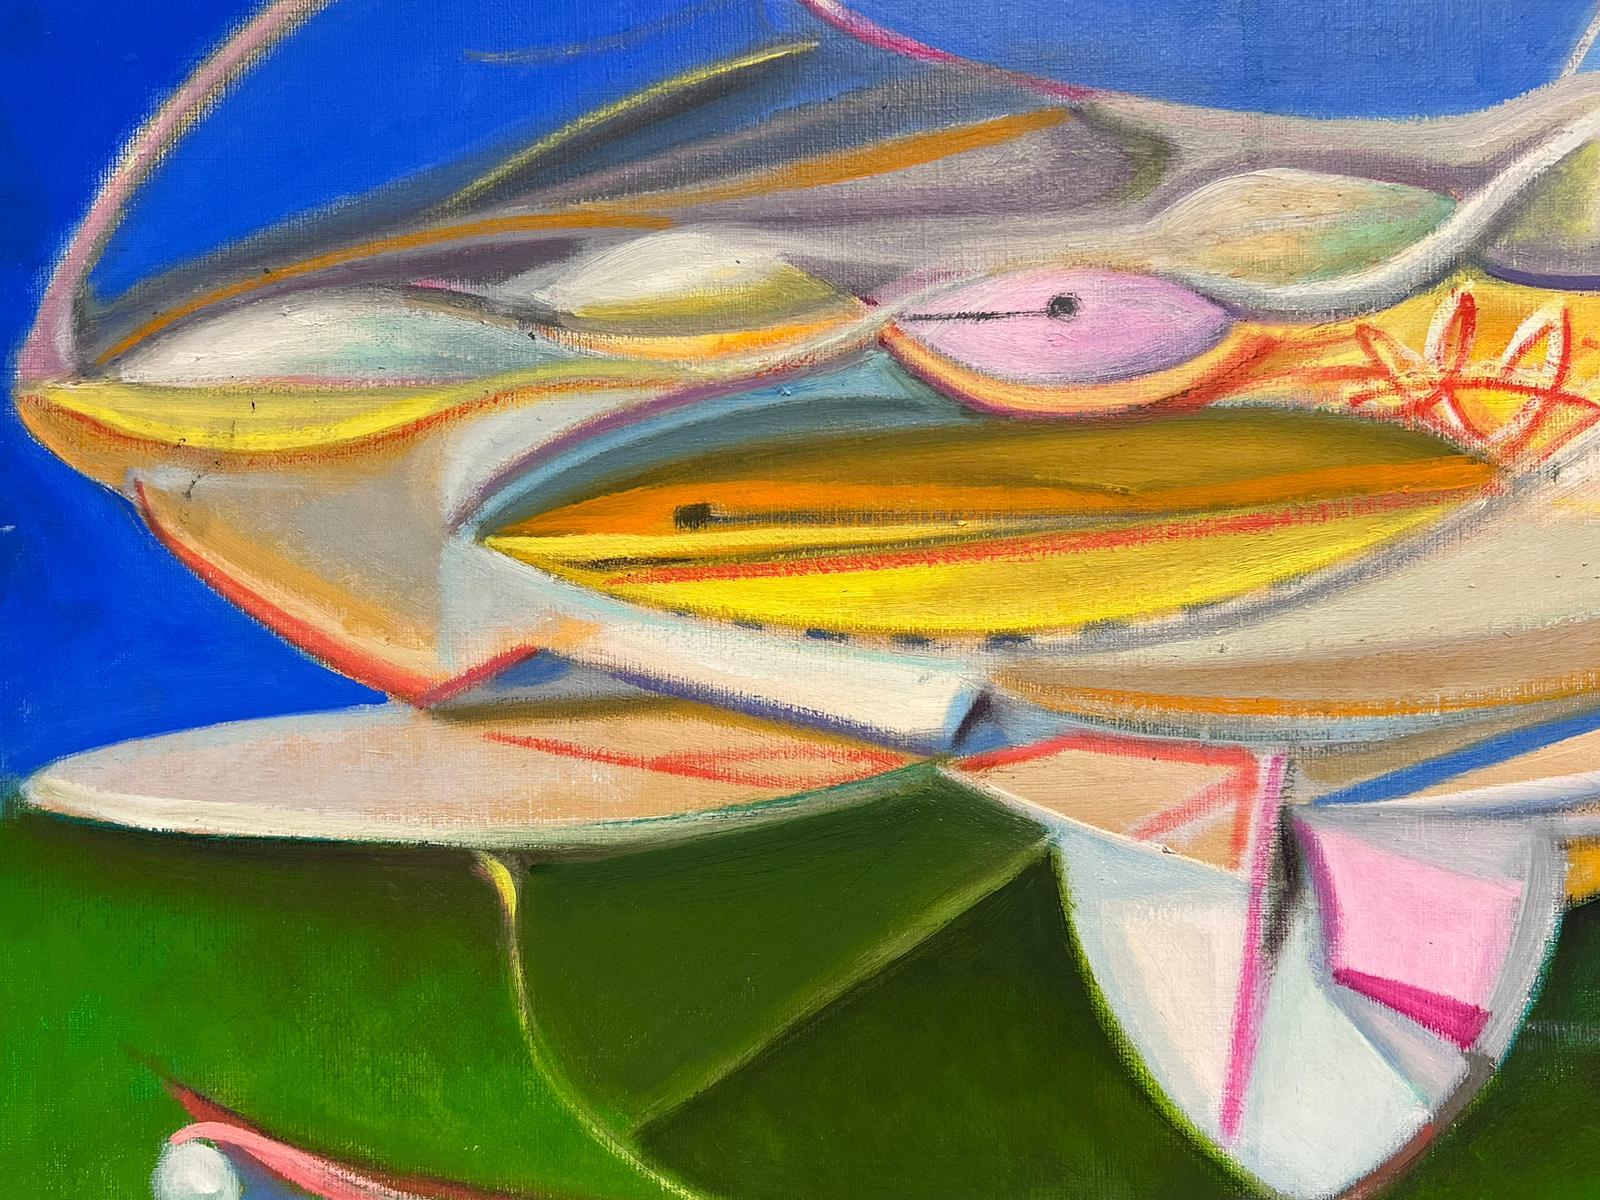 Tristan Fabry 1970er-80er Jahre, französischer surrealistischer Künstler
Abstrakt Surrealistisch Figurative Studie
Öl auf Leinwand, ungerahmt
verso signiert und datiert
Leinwand: 23,5 x 32 Zoll
Privatsammlung, Frankreich
Das Gemälde ist in einem